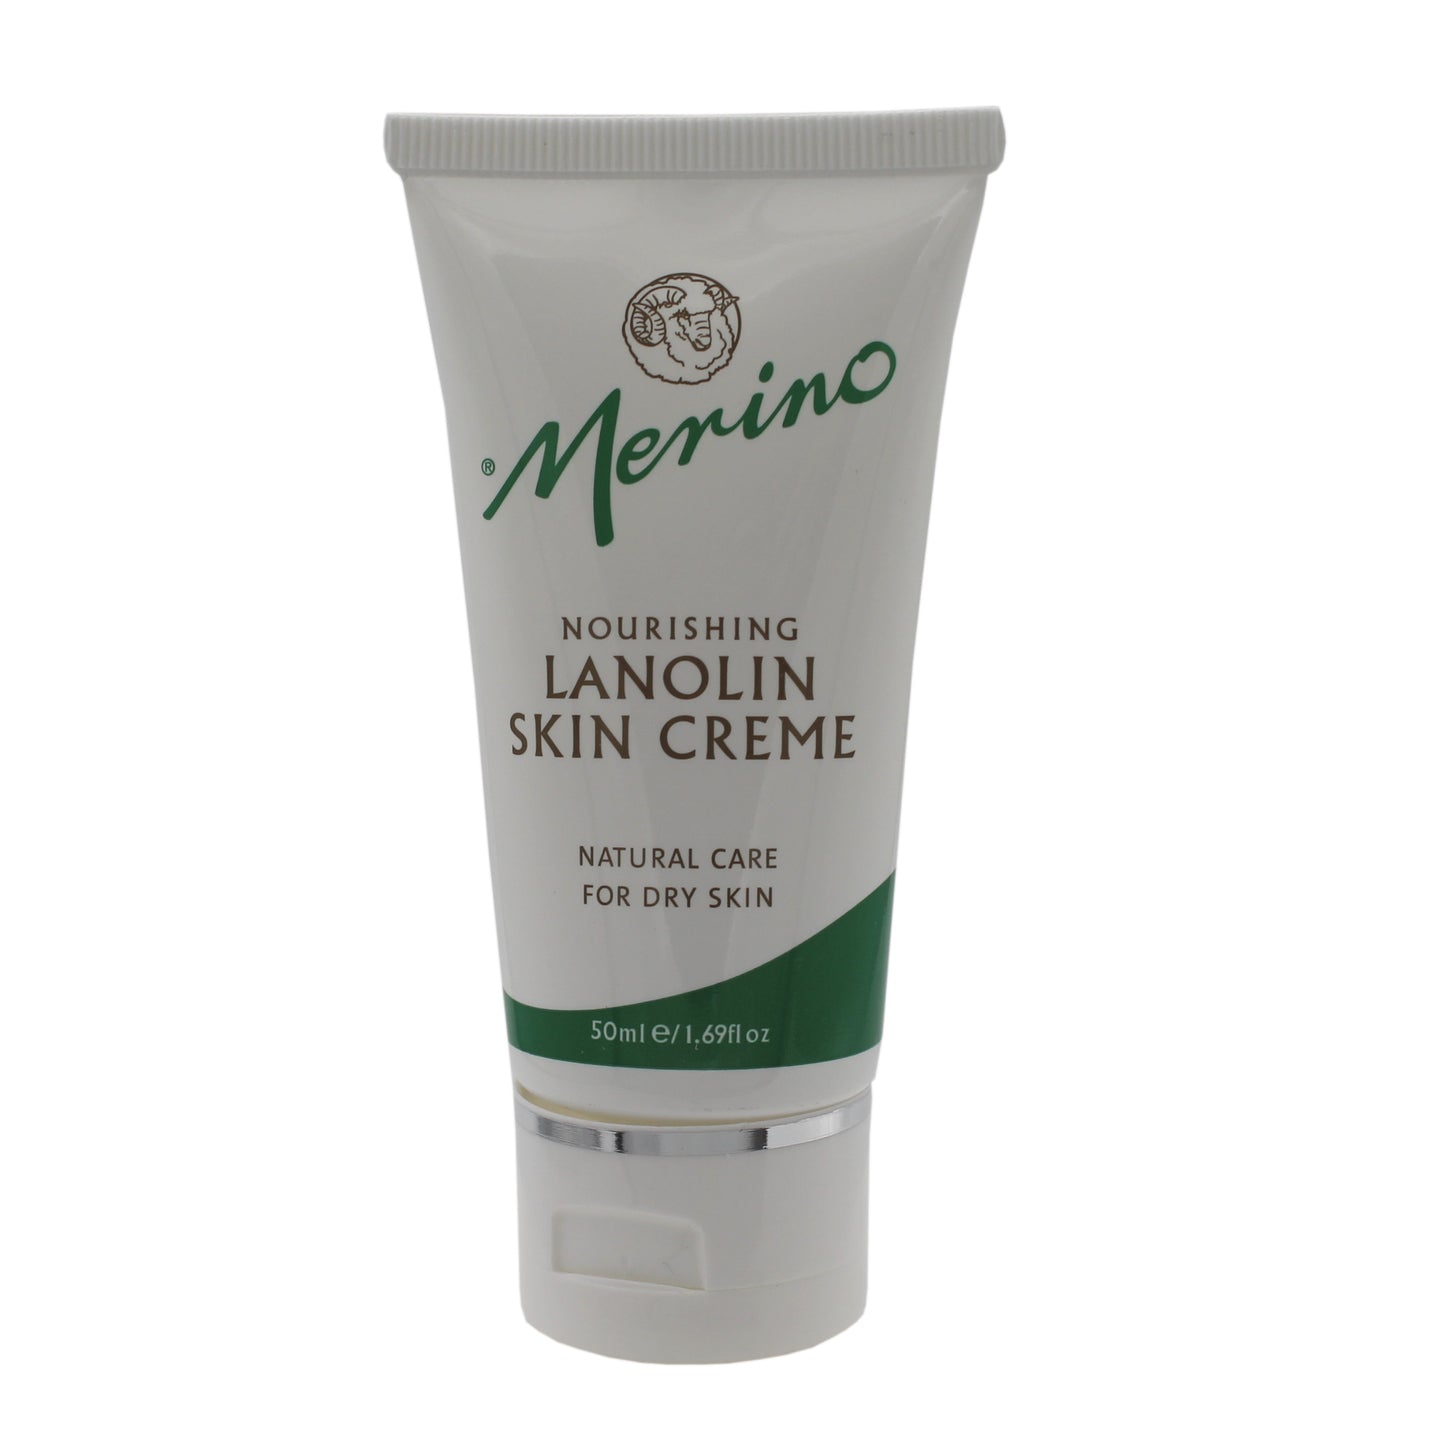 Lanolin Skin Creme